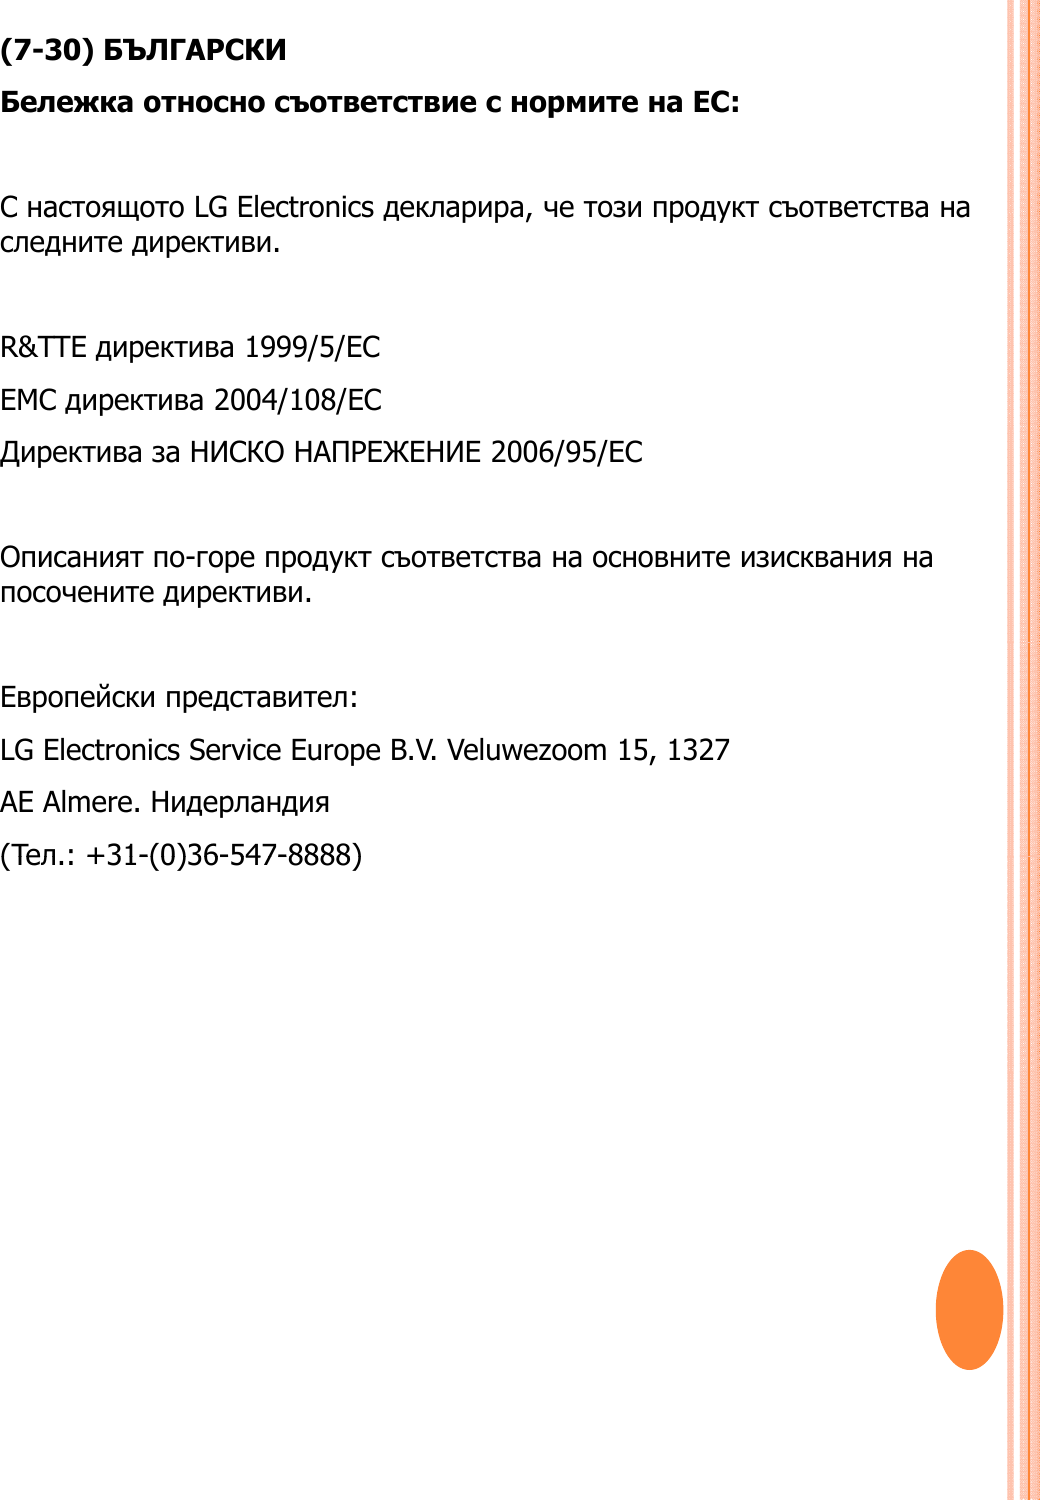 (7-30) БЪЛГАРСКИБележка относно съответствие с нормите на ЕС:СнастоящотоLG Electronicsдекларира,четозипродуктсъответстванаС настоящотоLG Electronics декларира, четозипродуктсъответстванаследните директиви. R&amp;TTE директива 1999/5/EC EMC директива 2004/108/EC Директива за НИСКО НАПРЕЖЕНИЕ 2006/95/ECОписаният по-горе продукт съответства на основните изисквания напосочените директиви.Европейски представител:LG Electronics Service Europe B.V. Veluwezoom 15, 1327AE Almere. Нидерландия(Teл:+31-(0)36-547-8888)(Teл.: +31-(0)36-547-8888)